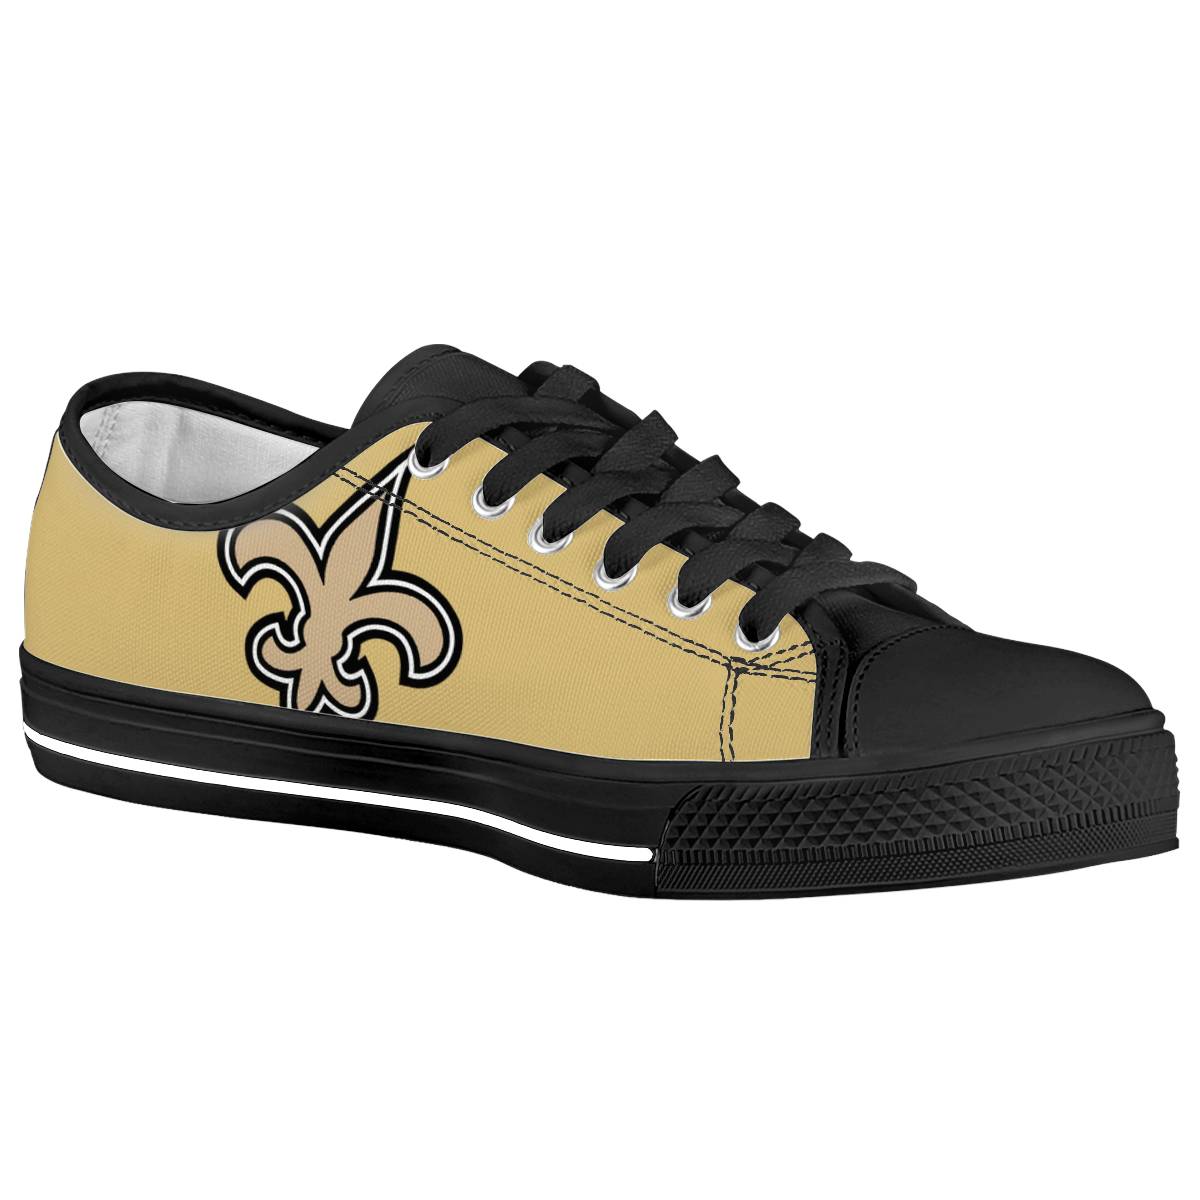 Men's New Orleans Saints Low Top Canvas Sneakers 005